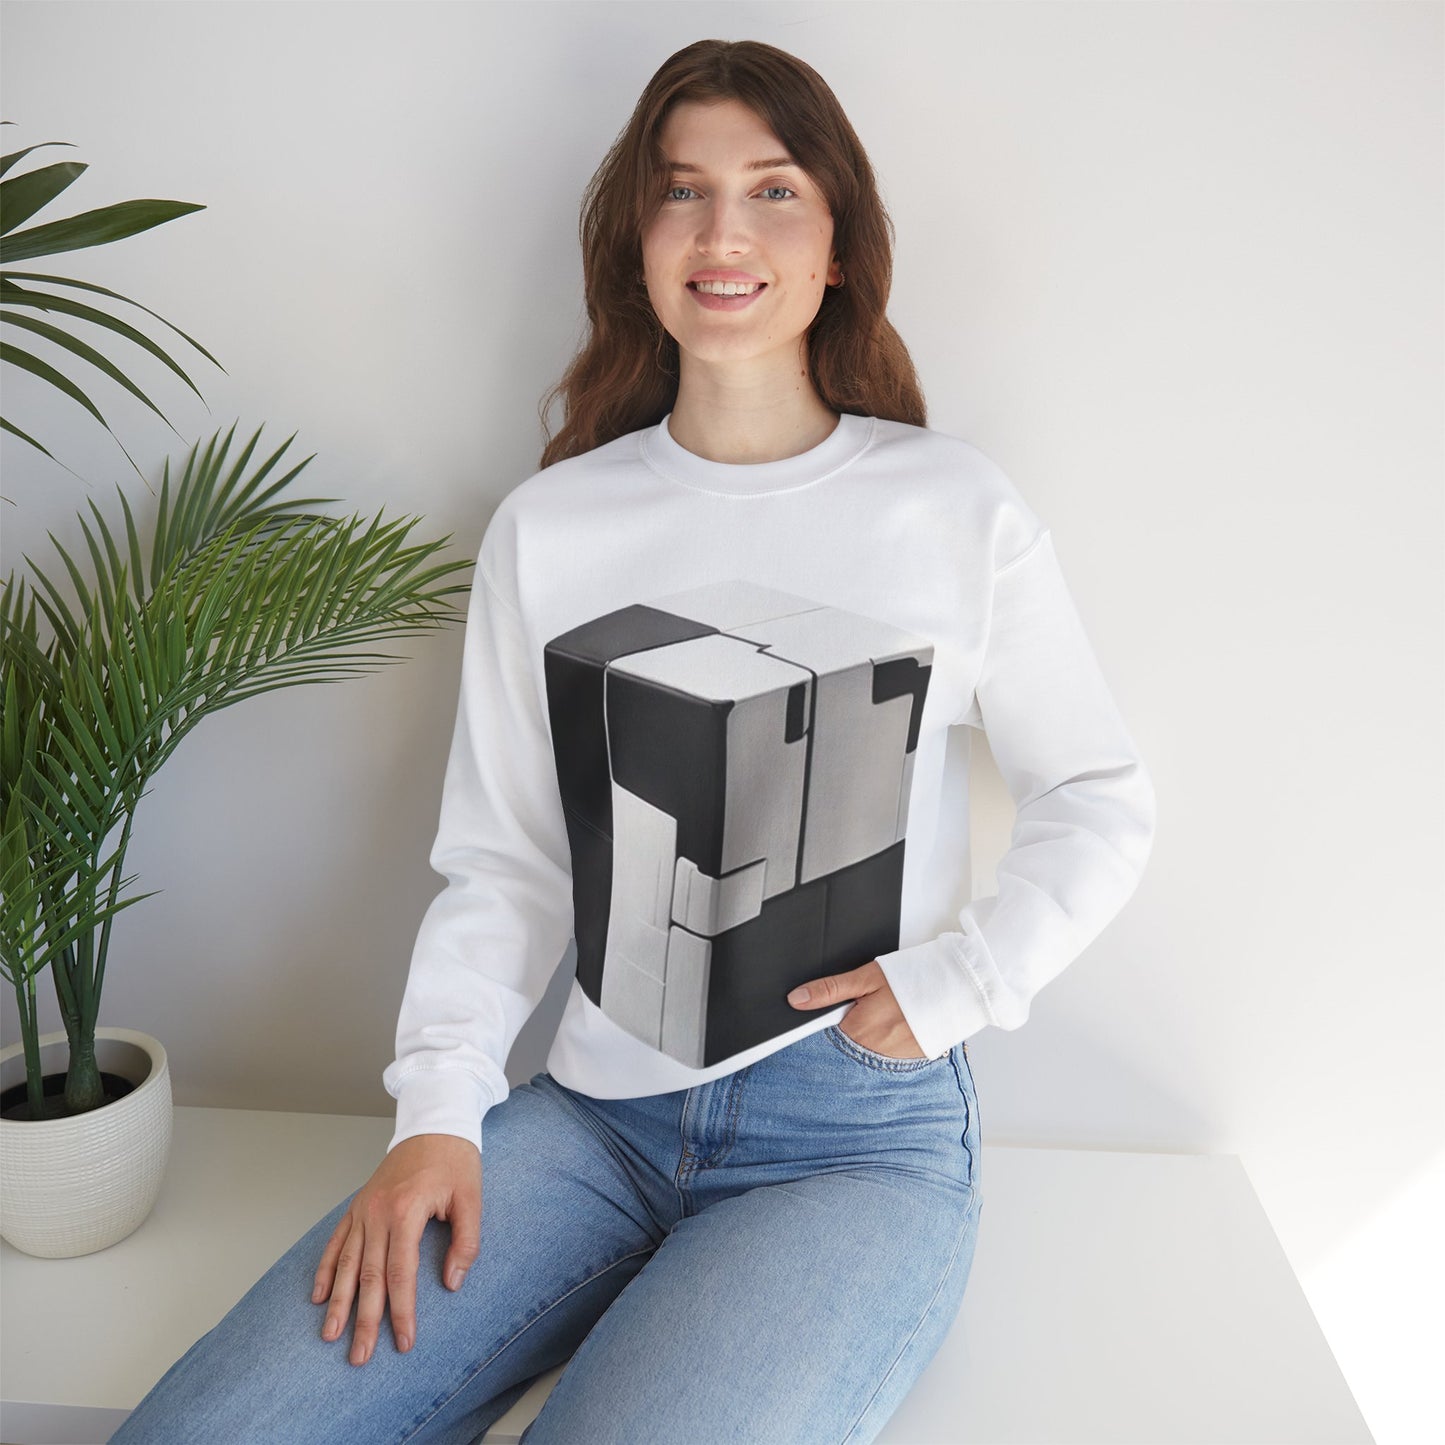 Black and White Cube - Unisex Crewneck Sweatshirt